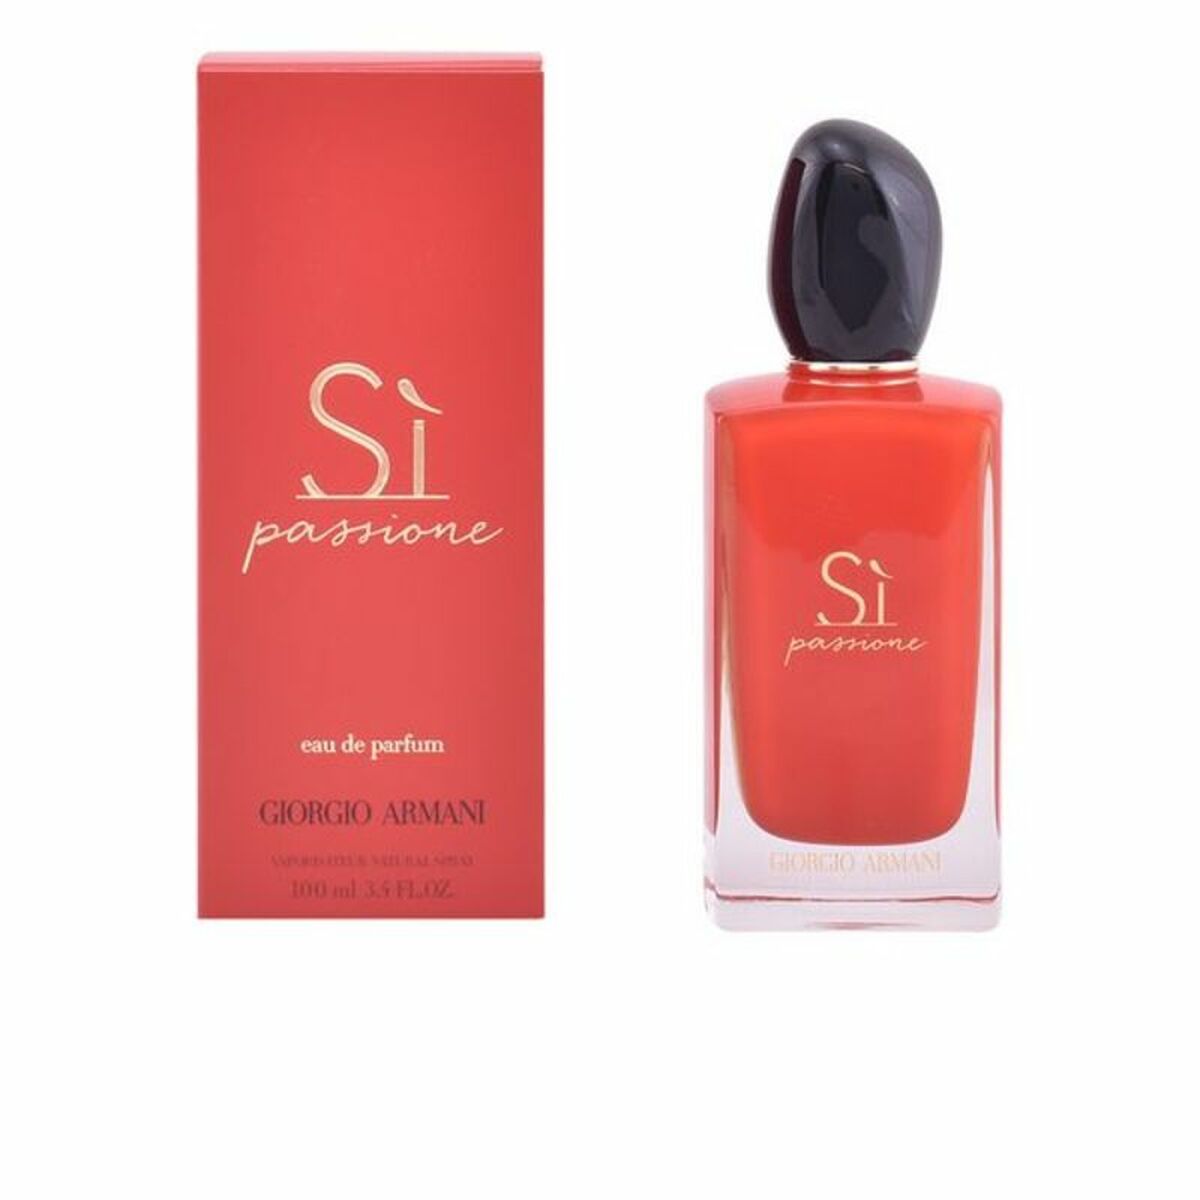 Women's Perfume Sí Passione Giorgio Armani ARM00301 EDP (100 ml)-0